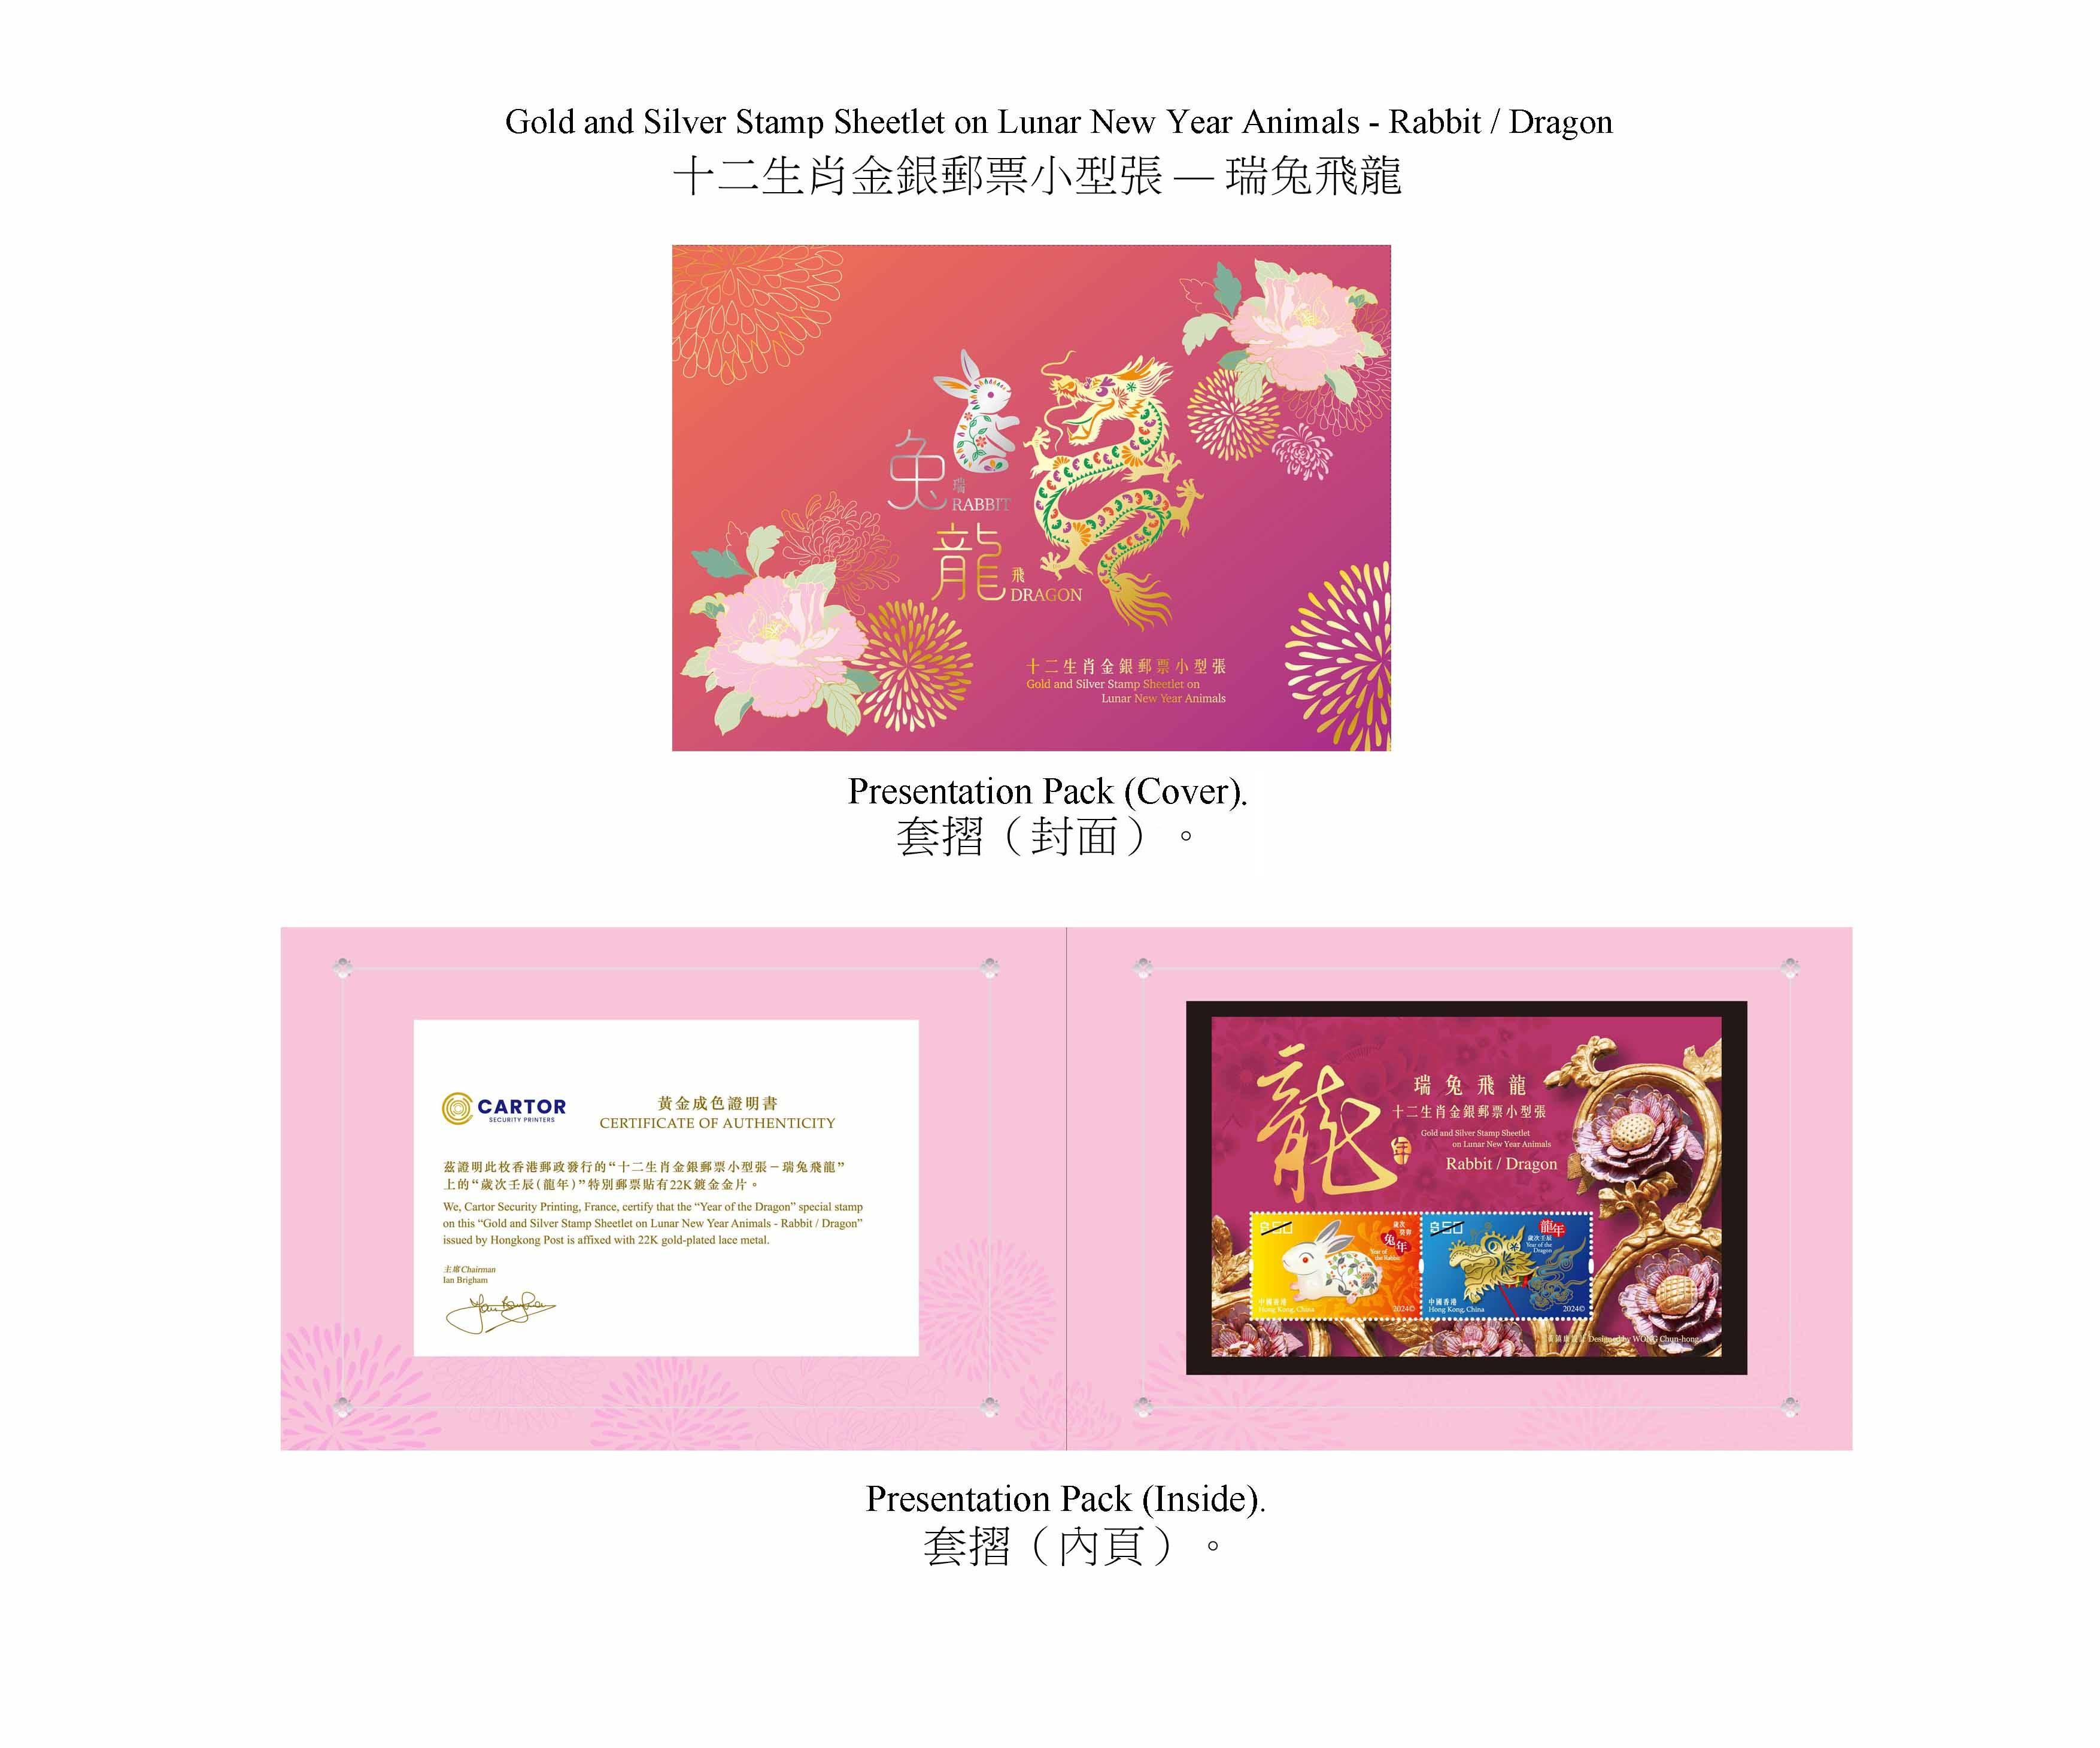 香港邮政二○二四年一月五日（星期五）发行以「岁次甲辰（龙年）」为题的特别邮票及相关集邮品，同日亦会推出「十二生肖金银邮票小型张──瑞兔飞龙」。图示以「瑞兔飞龙」为题的套折。